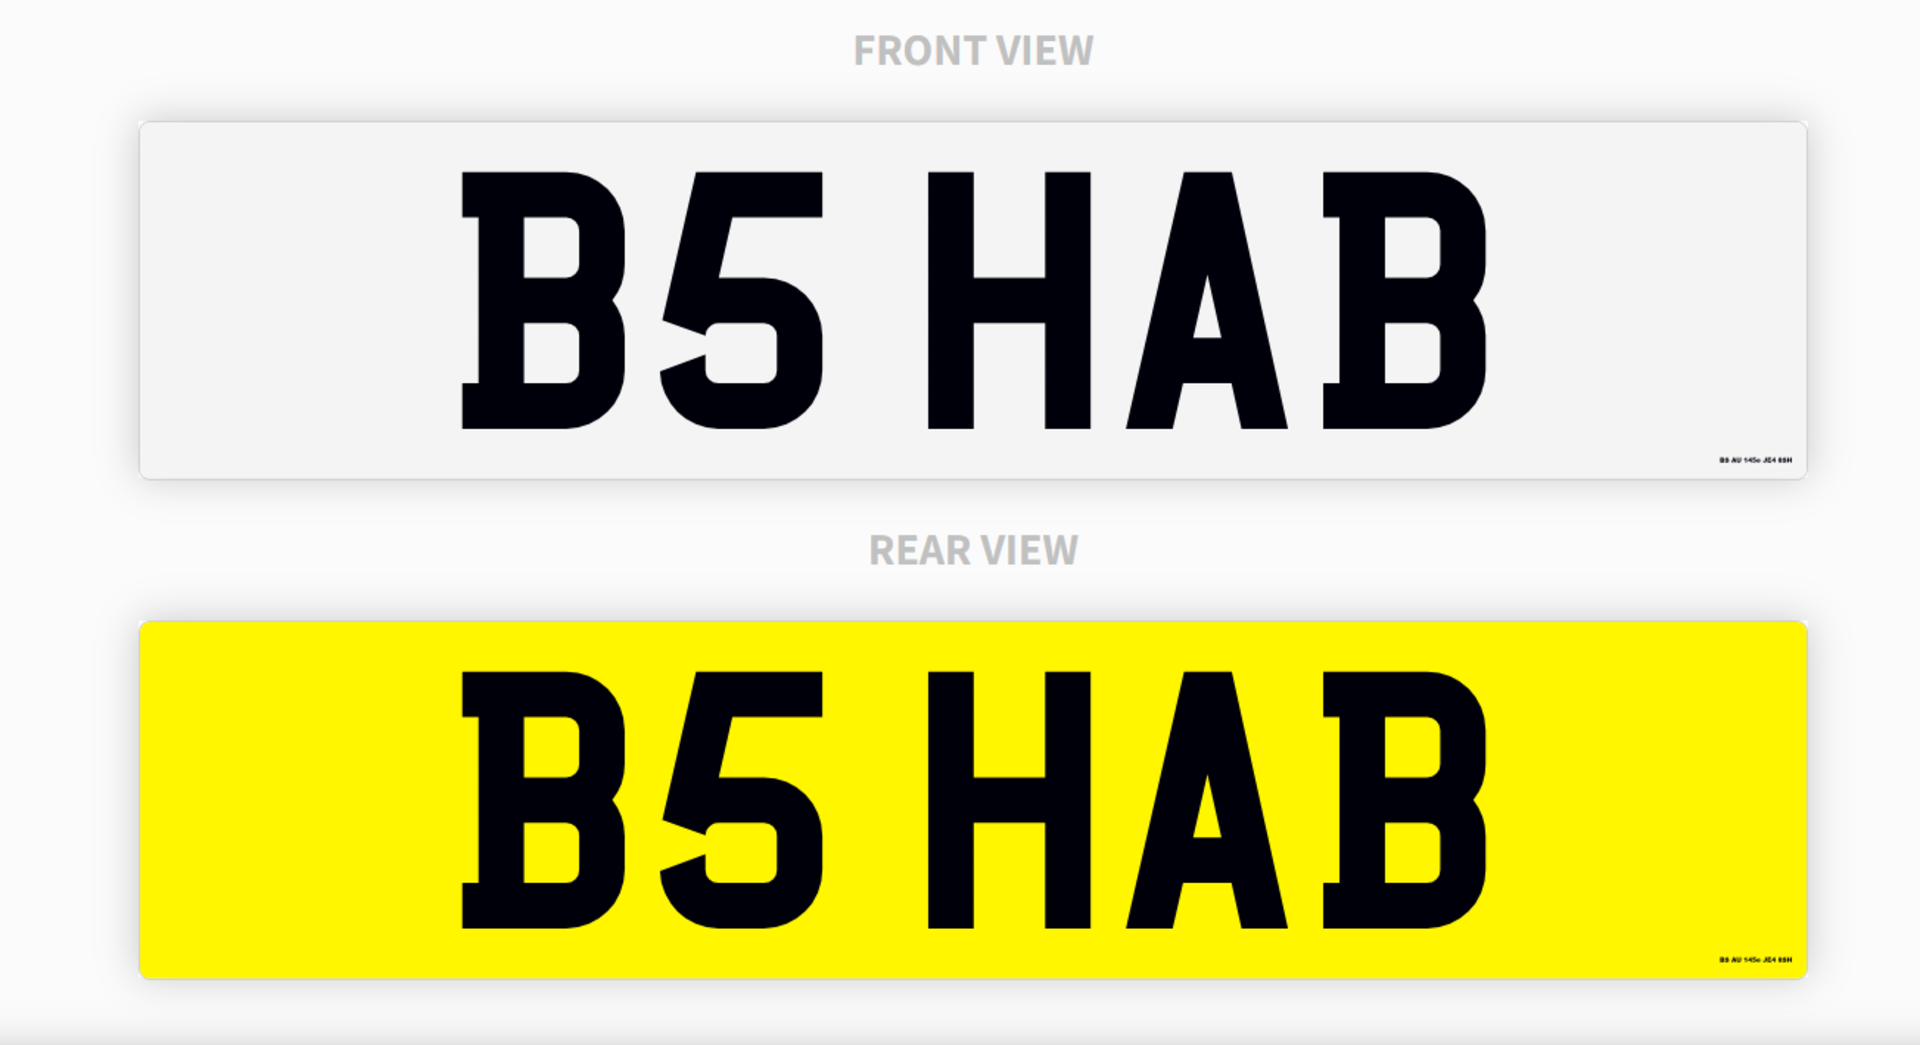 PRIVATE REGISTRATION "B5 HAB'' - ''B SHAB''